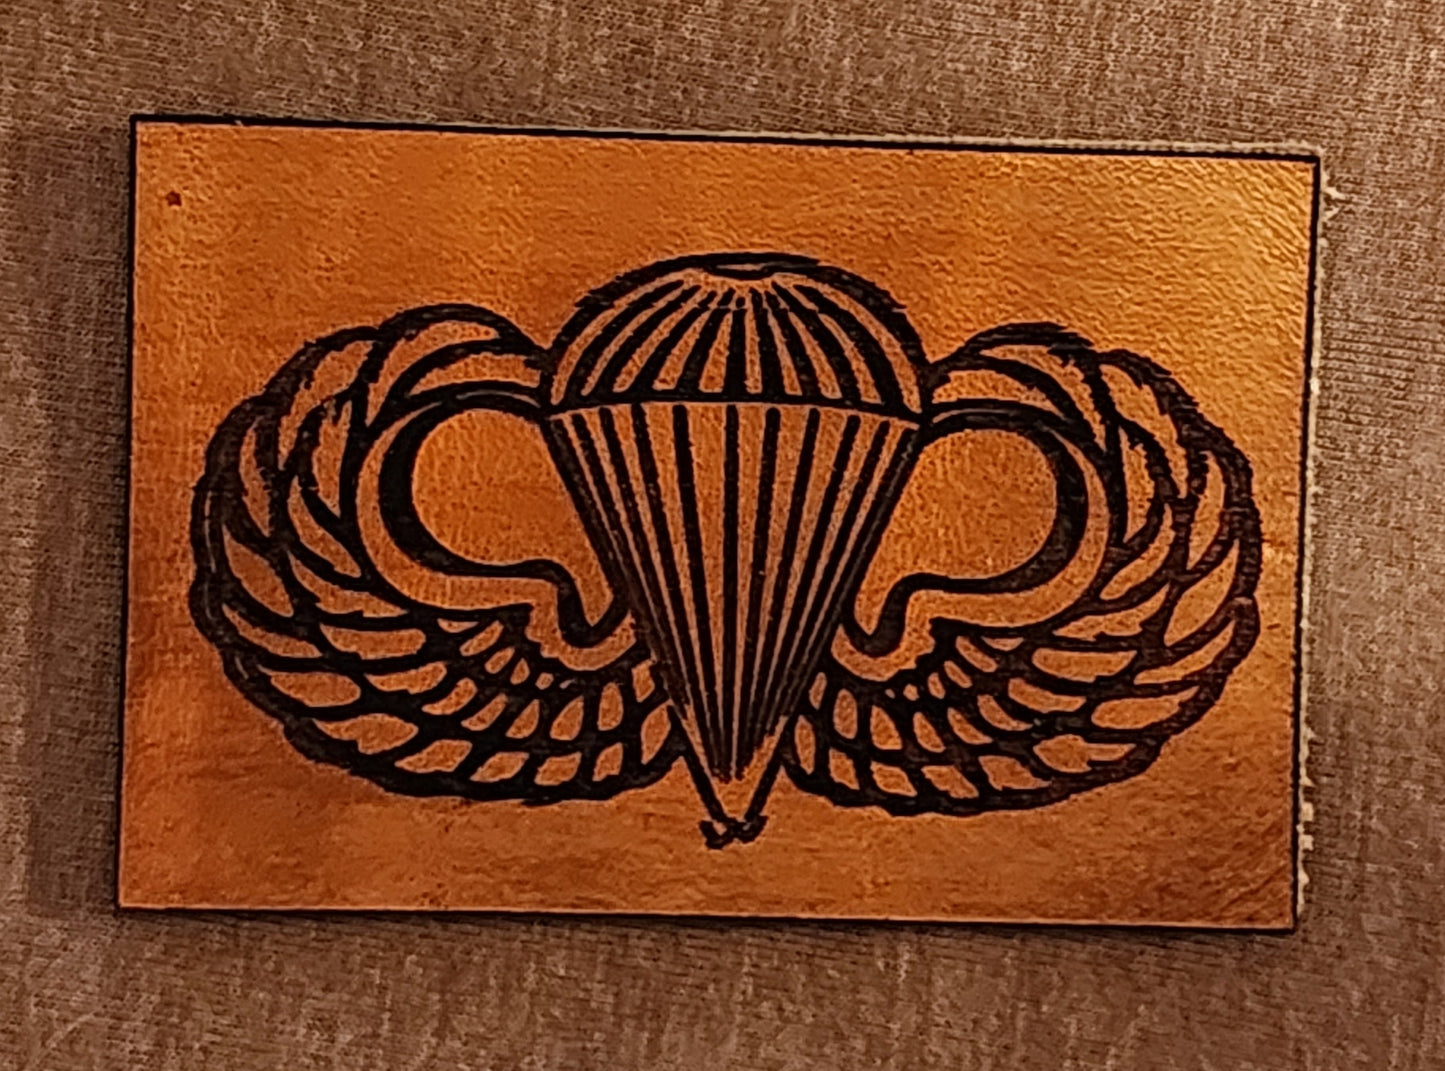 Basic Parachutist Badge